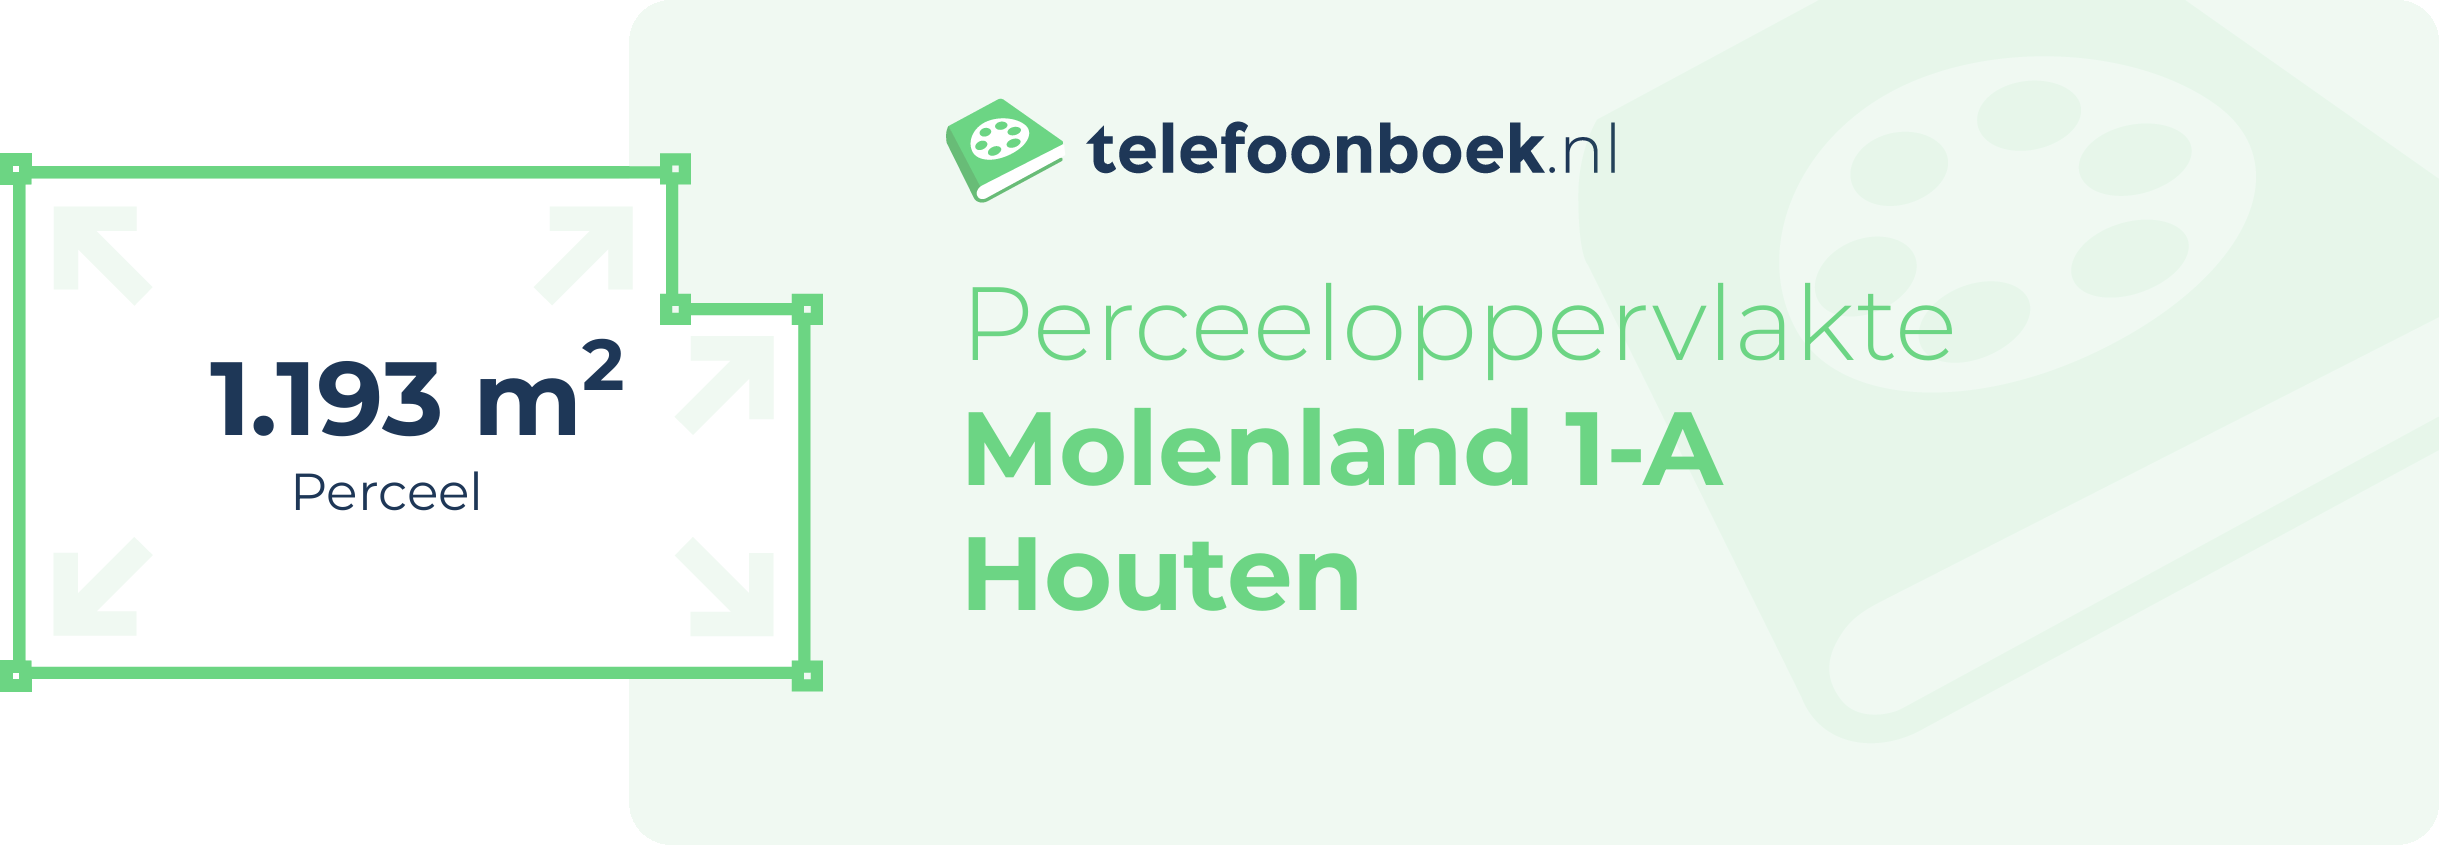 Perceeloppervlakte Molenland 1-A Houten